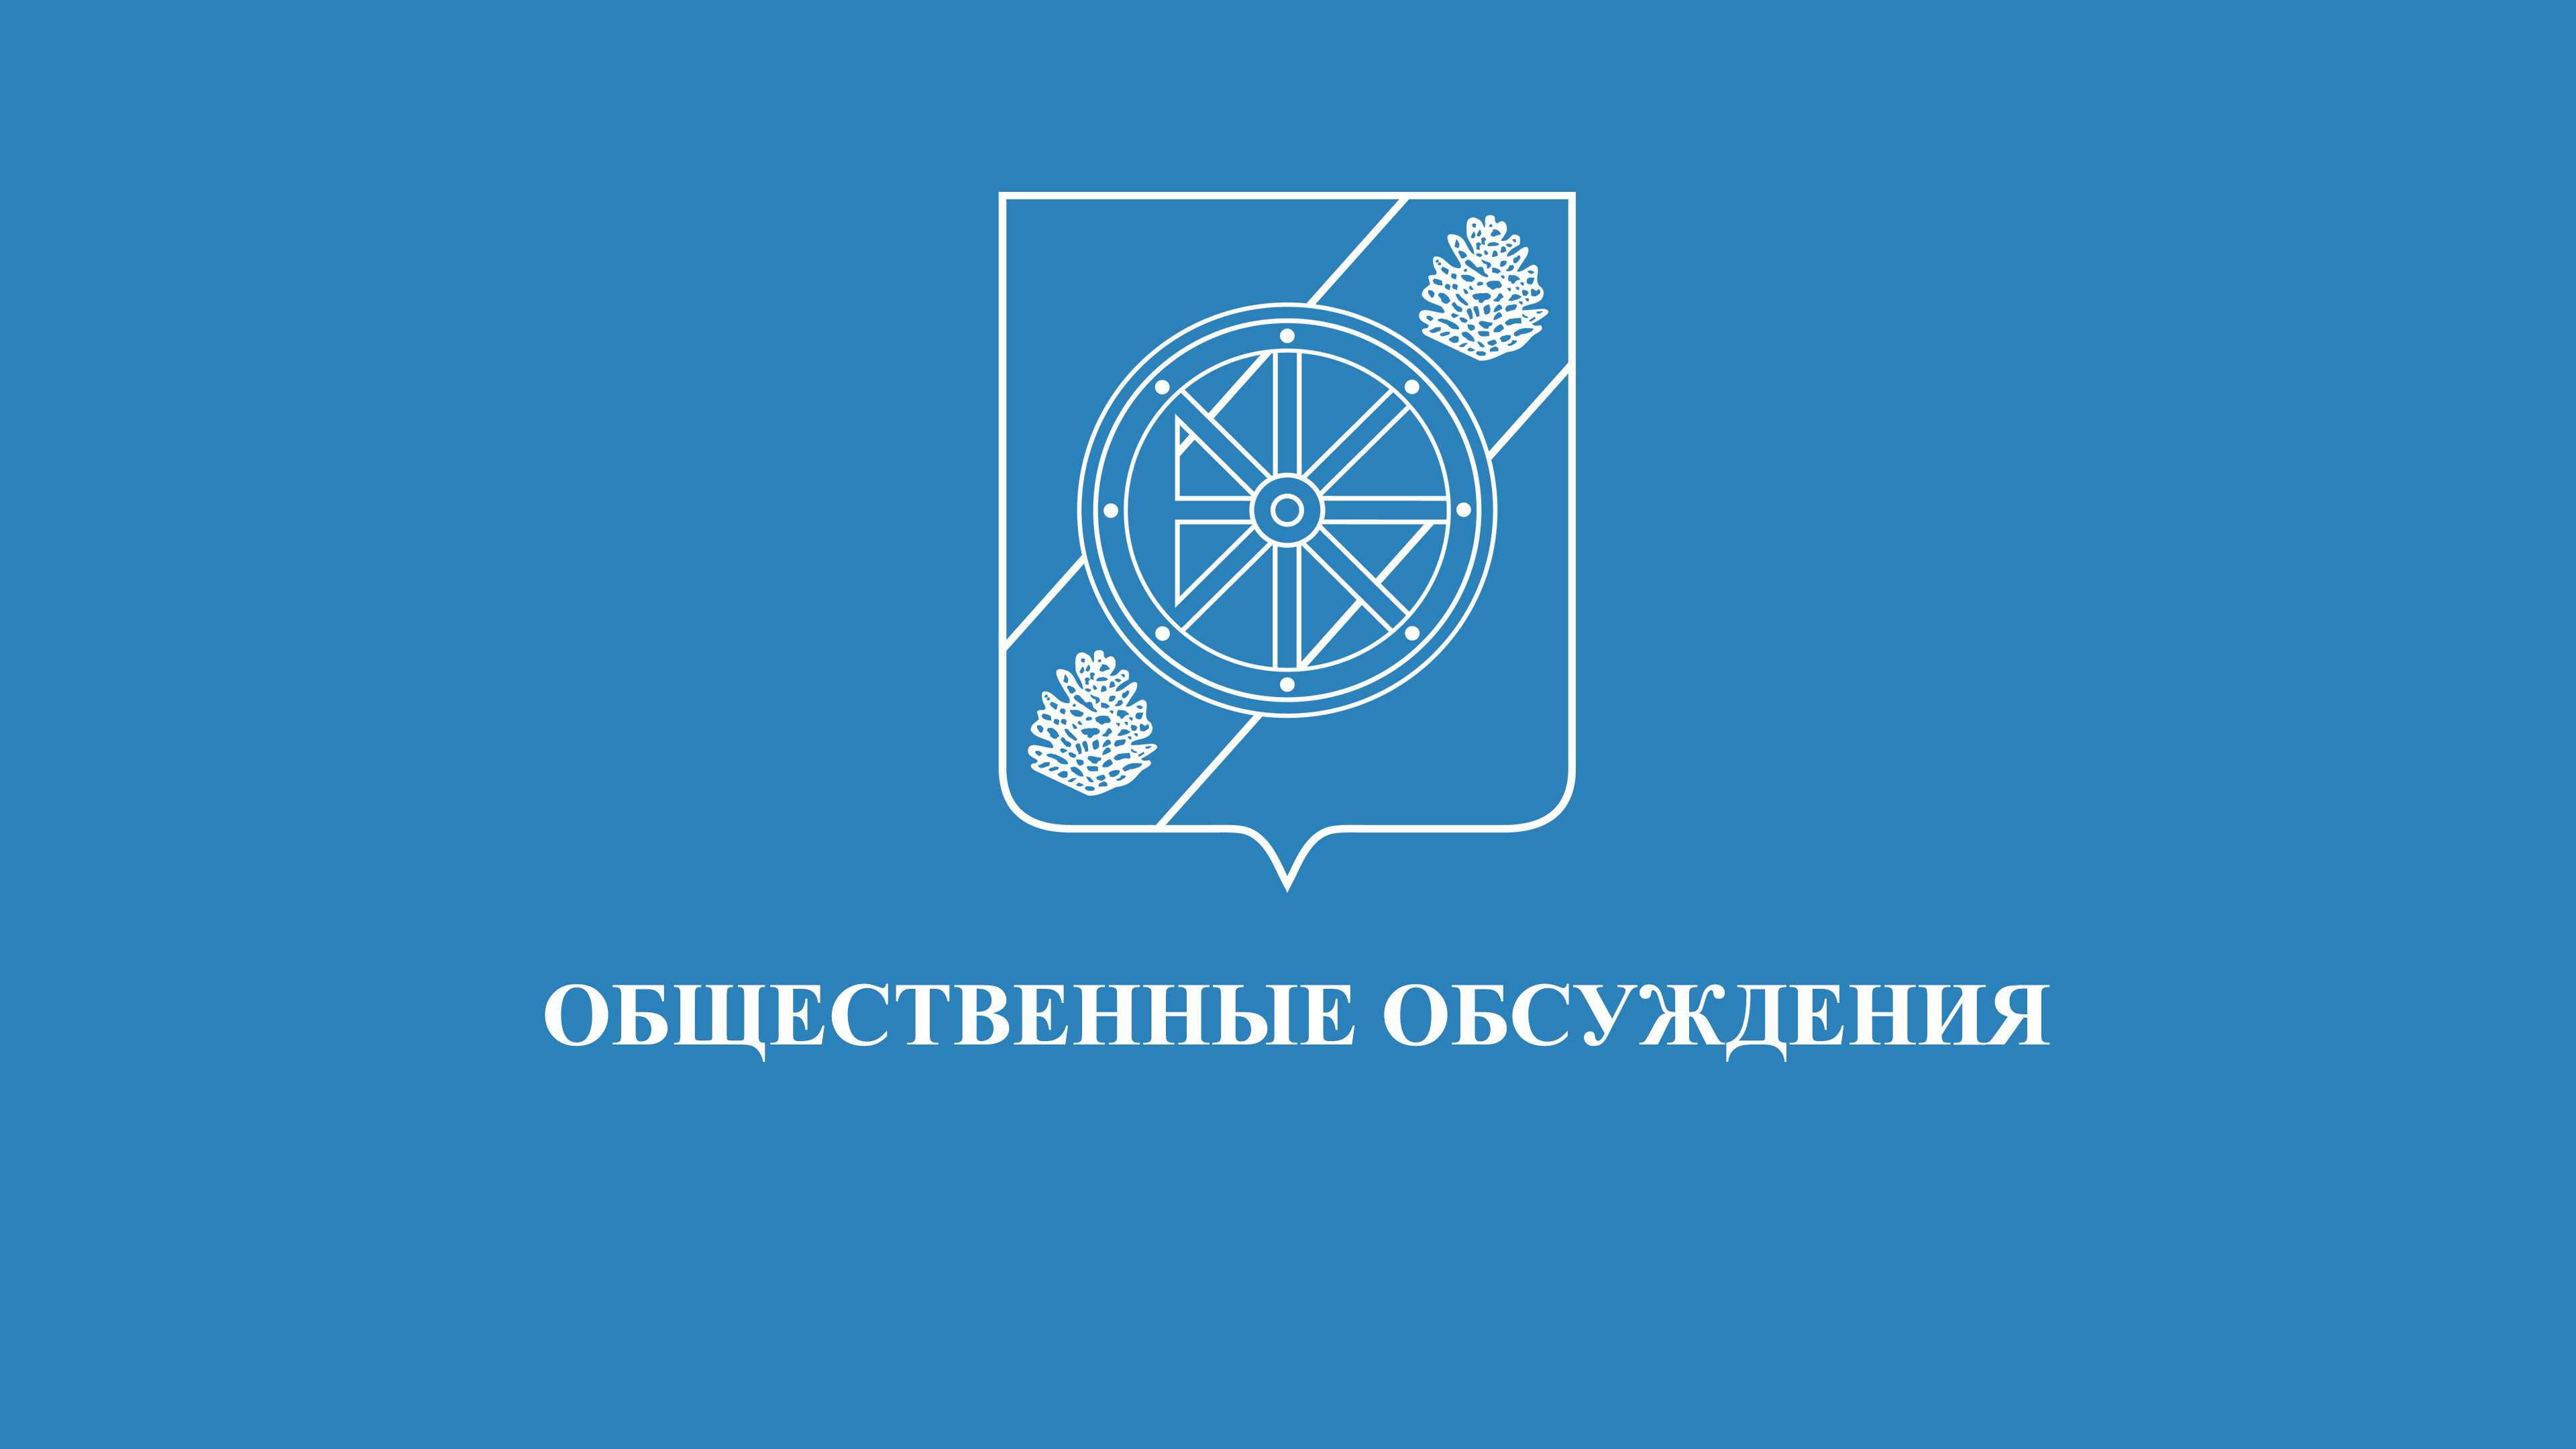 О внесении изменений в муниципальную программу «Обеспечение безопасности населения Няндомского муниципального округа».